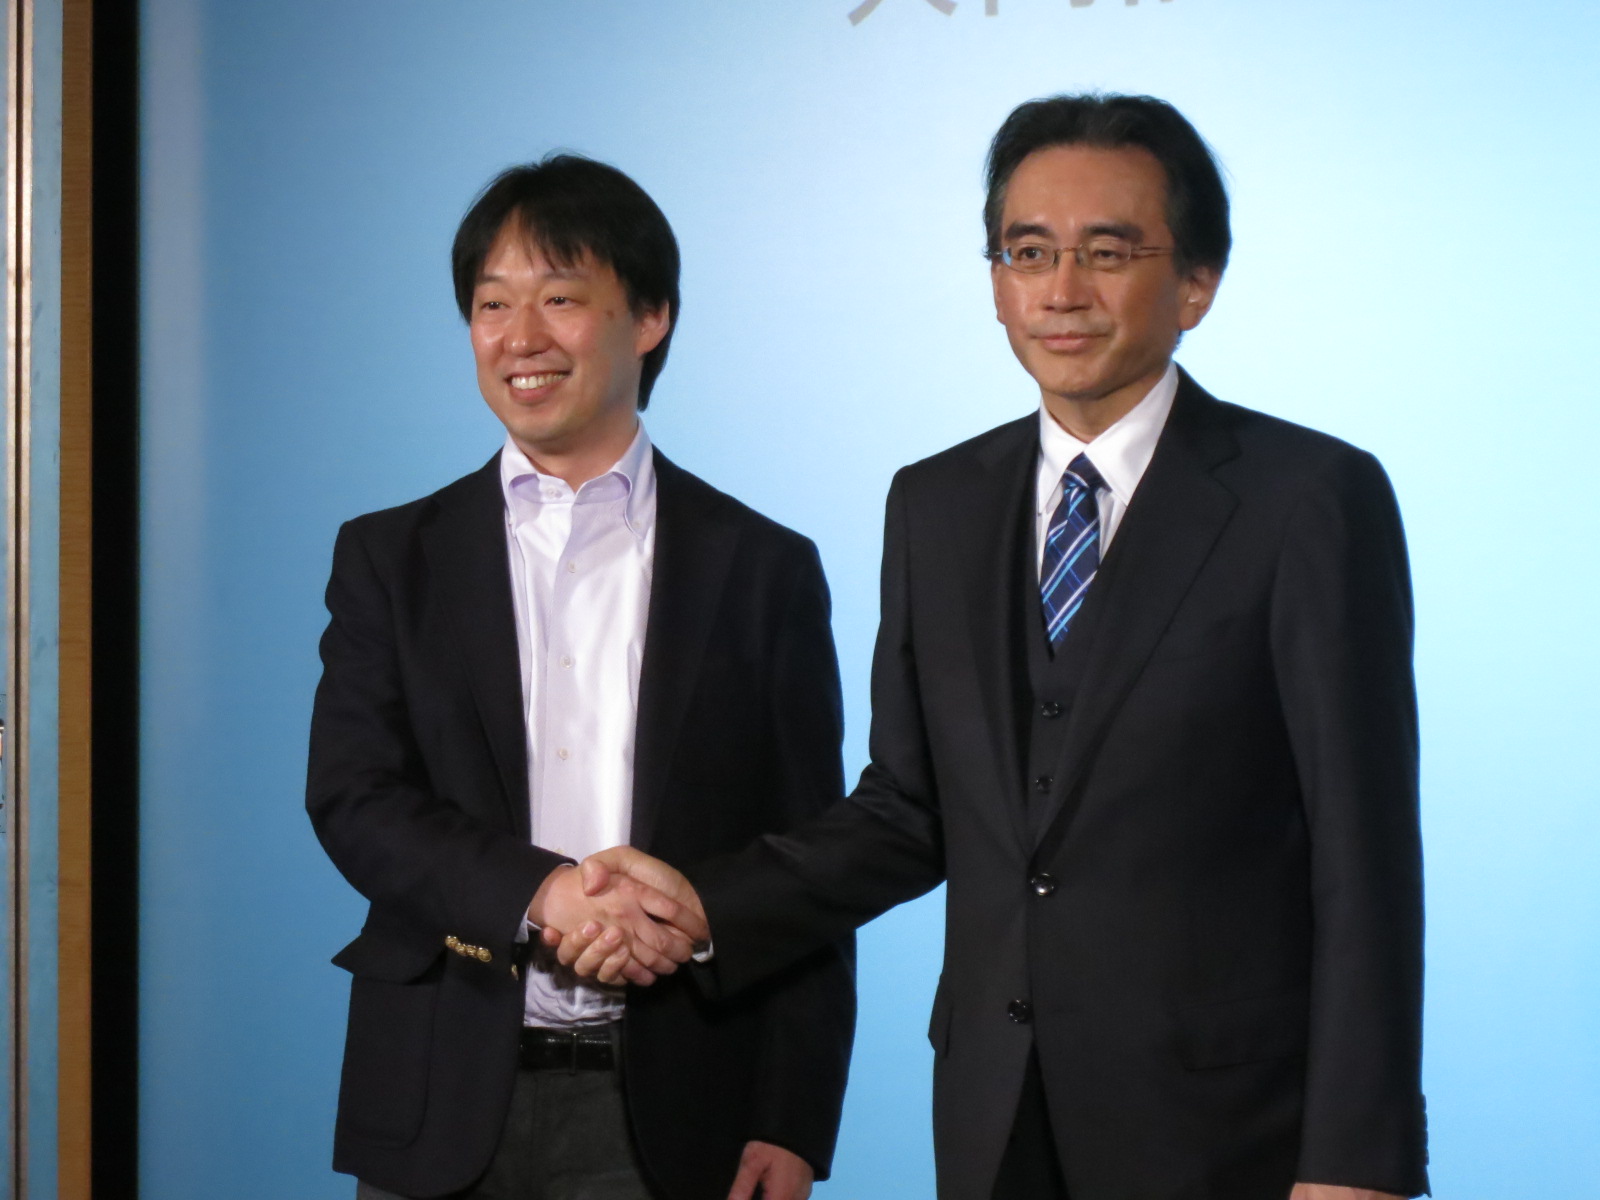 Feed på Børnepalads Når som helst Nintendo finally enters smartphone game sector, with DeNA as partner | The  Japan Times